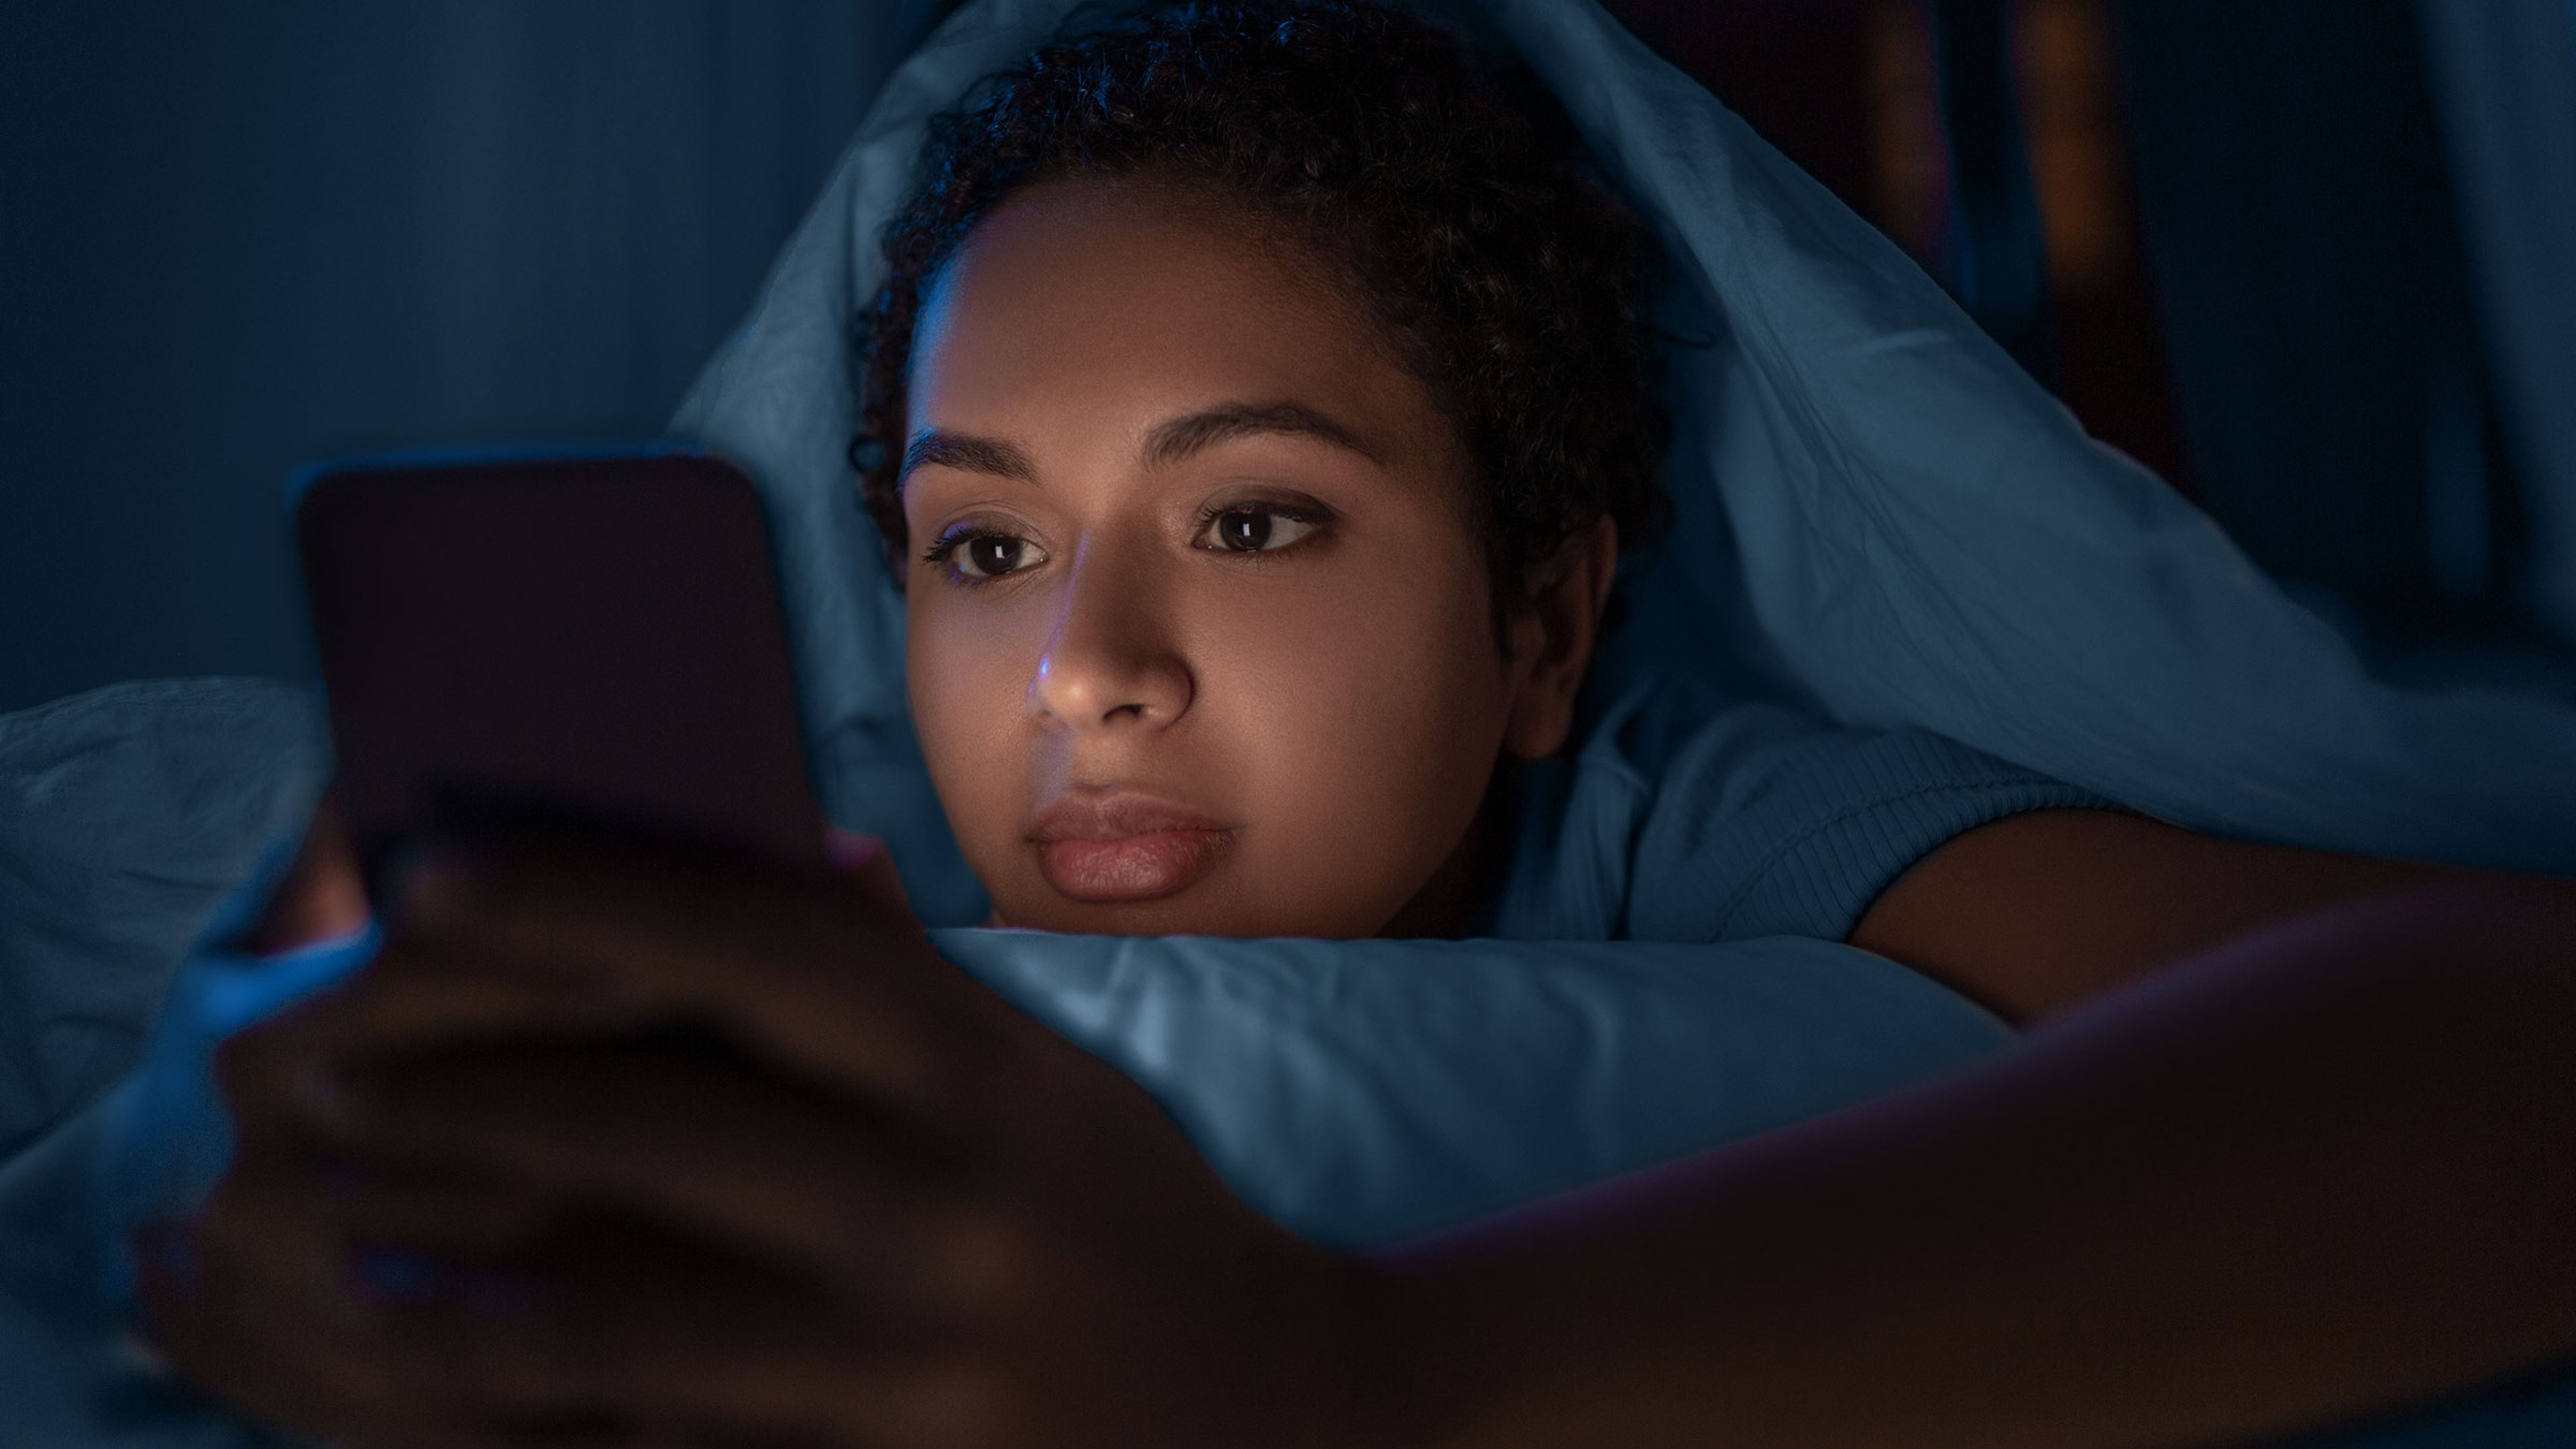 Mujer usa el móvil antes de irse a dormir